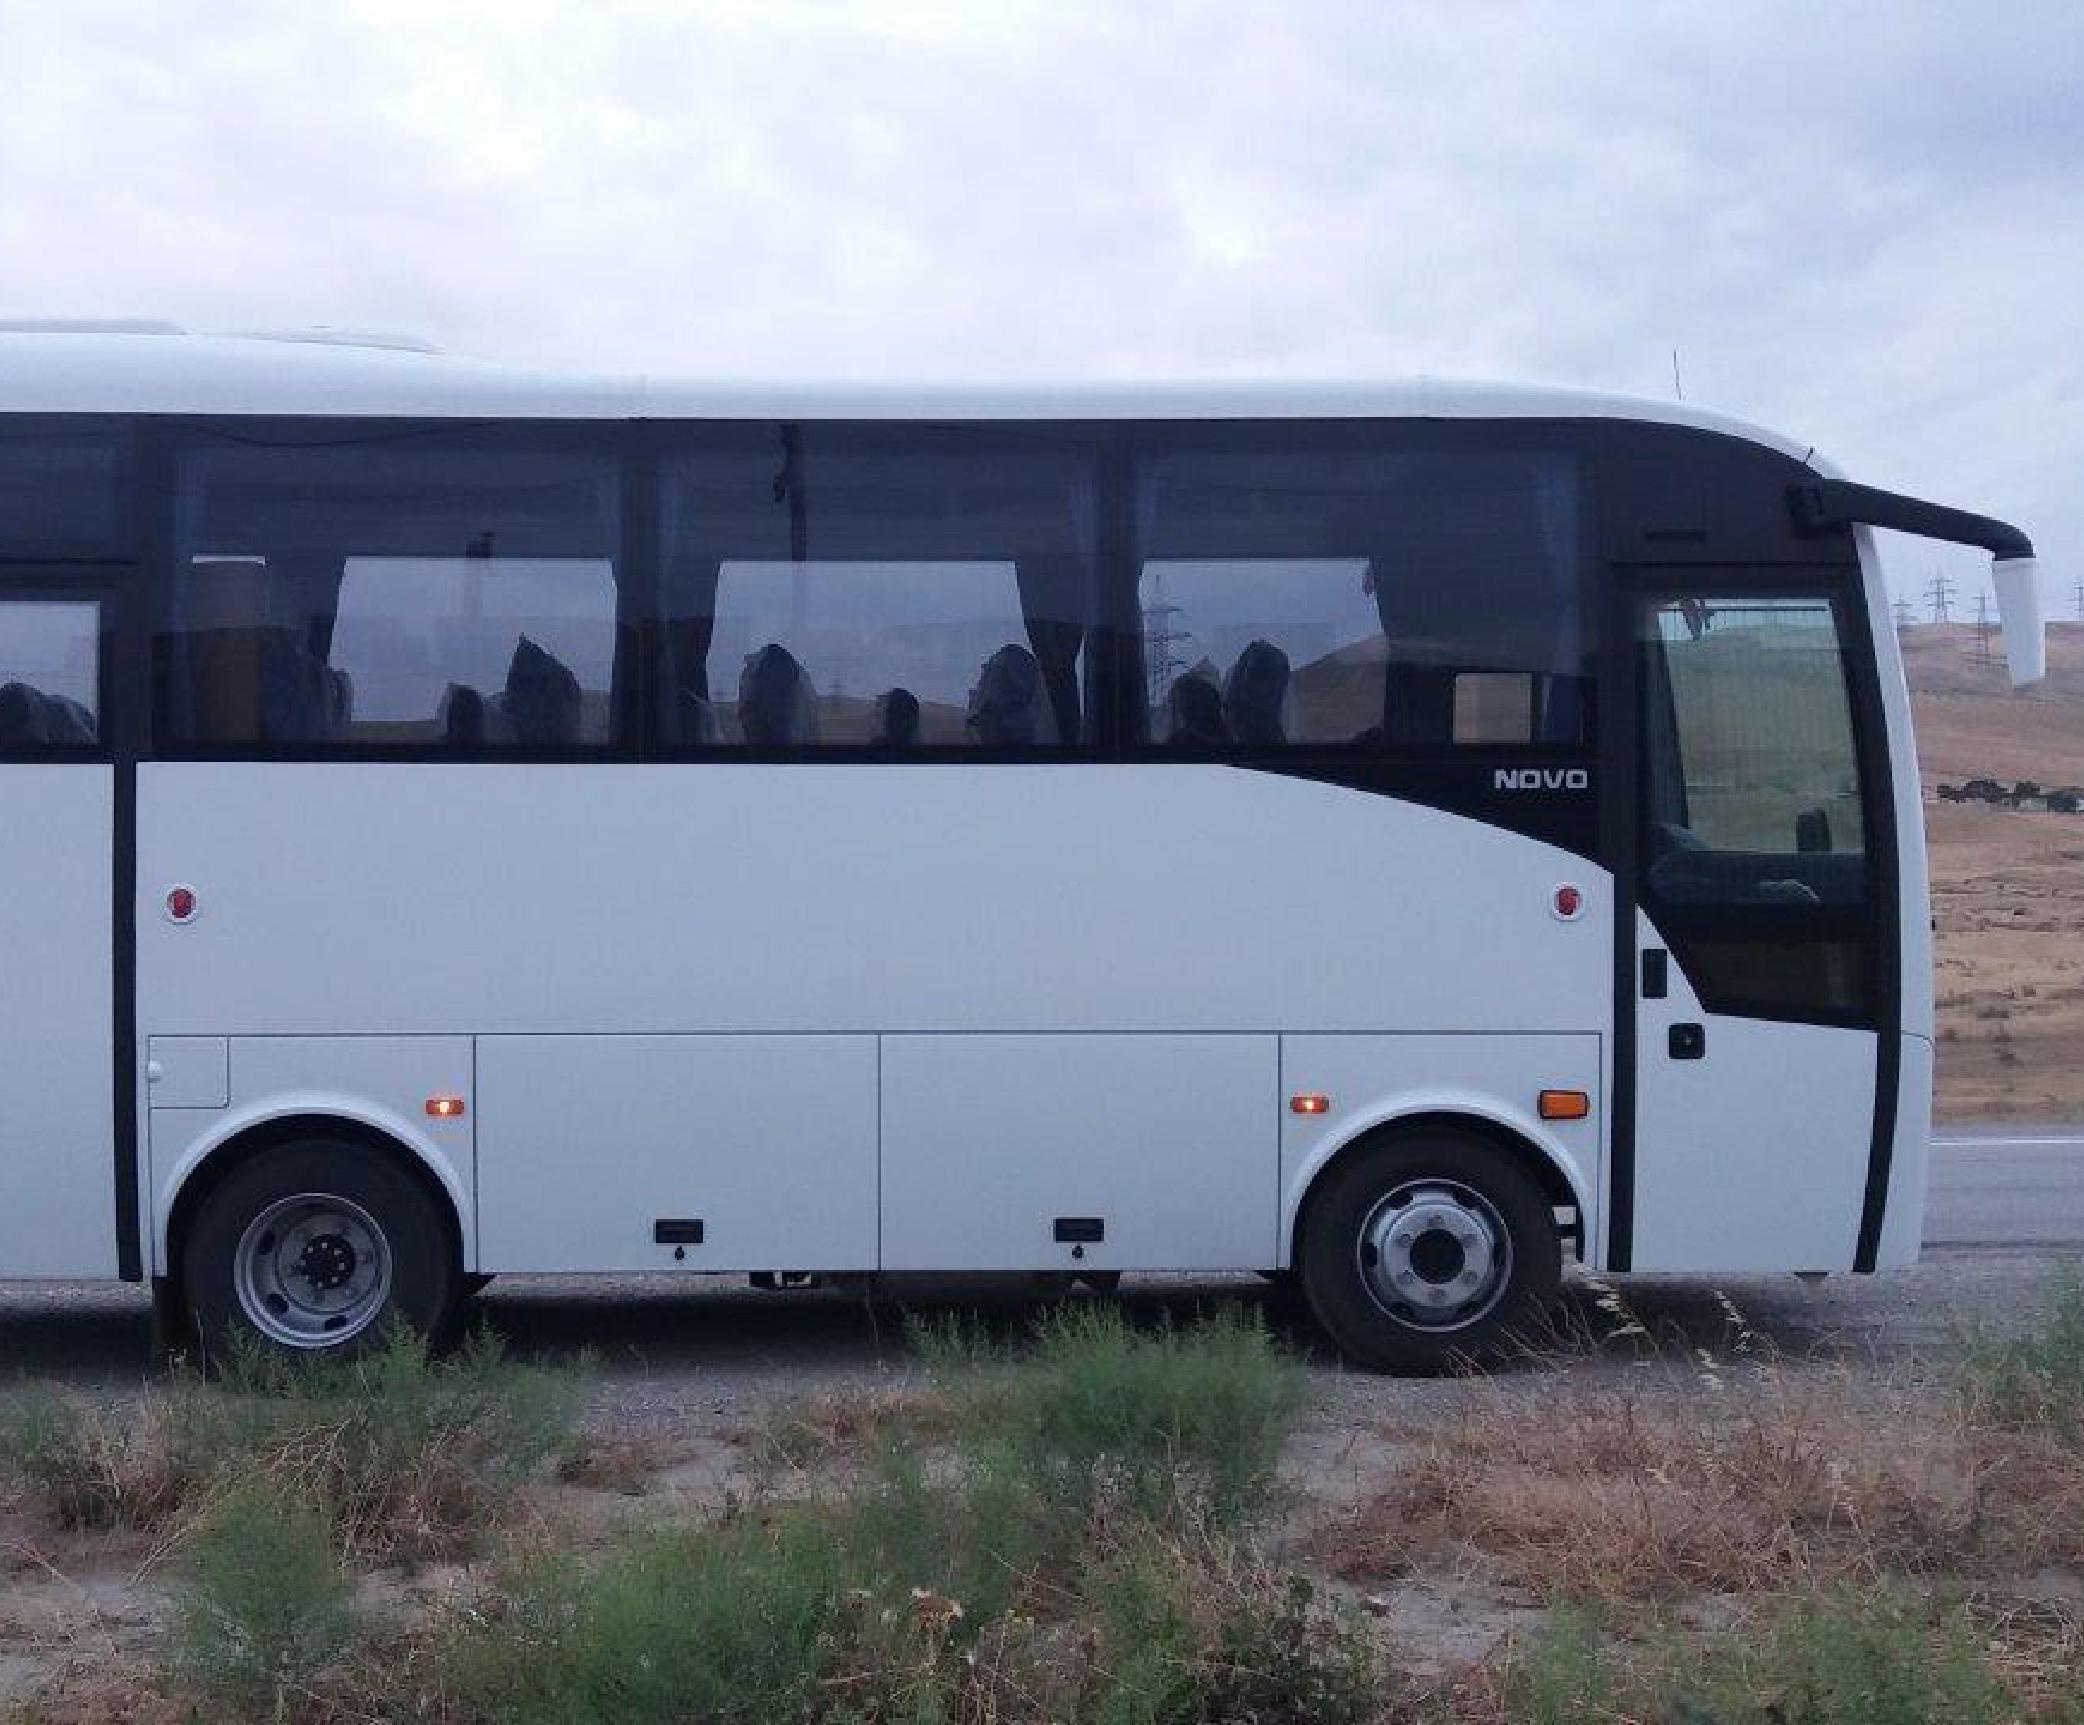 Azərbaycan Respublikası, Bakı Metropoliten QSC-nin sifarişinə əsasən avtobusun satınalınması